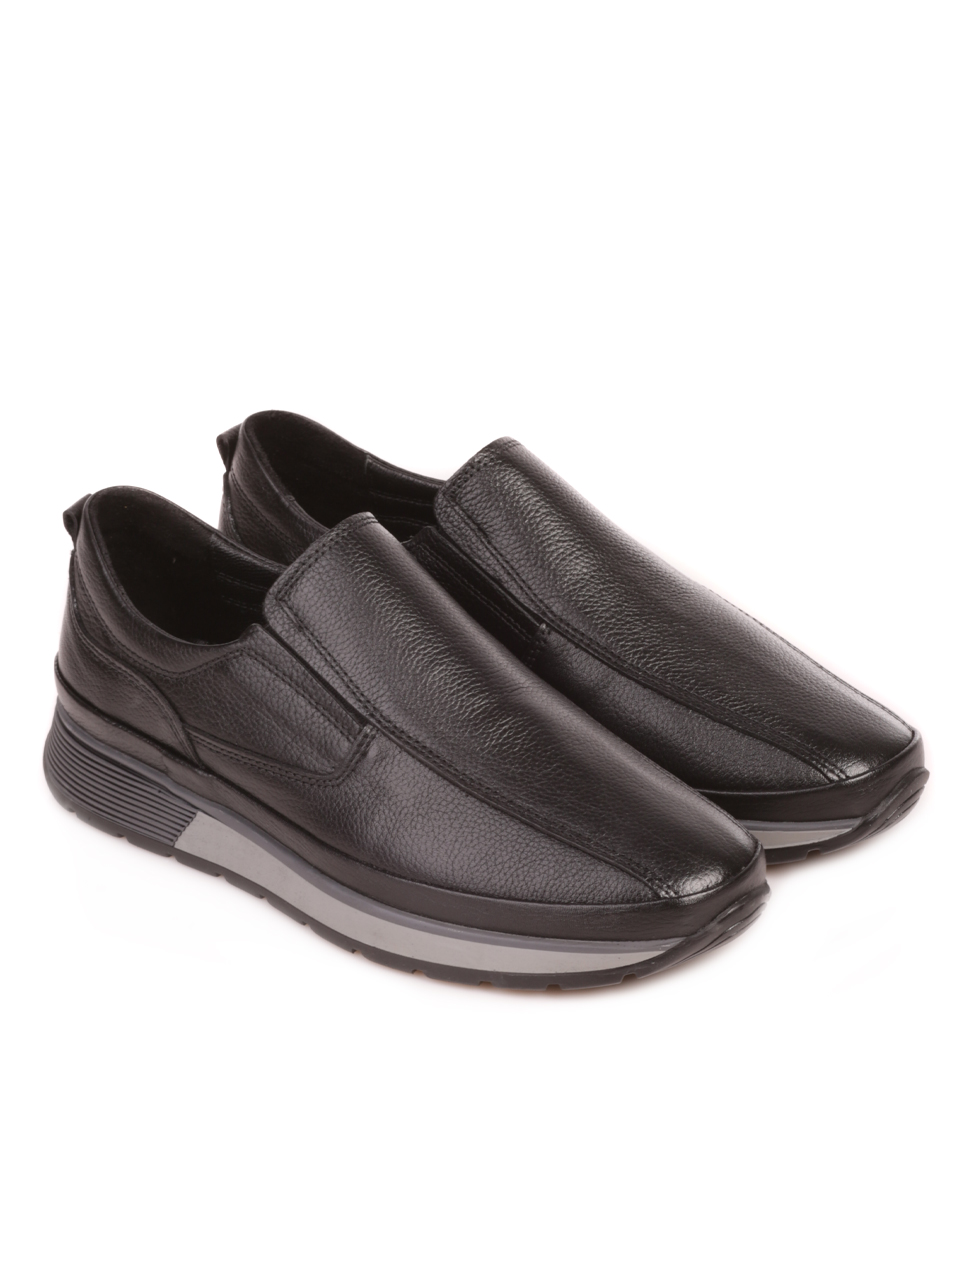 Ежедневни мъжки обувки от естествена кожа в черно 7AT-23743 black